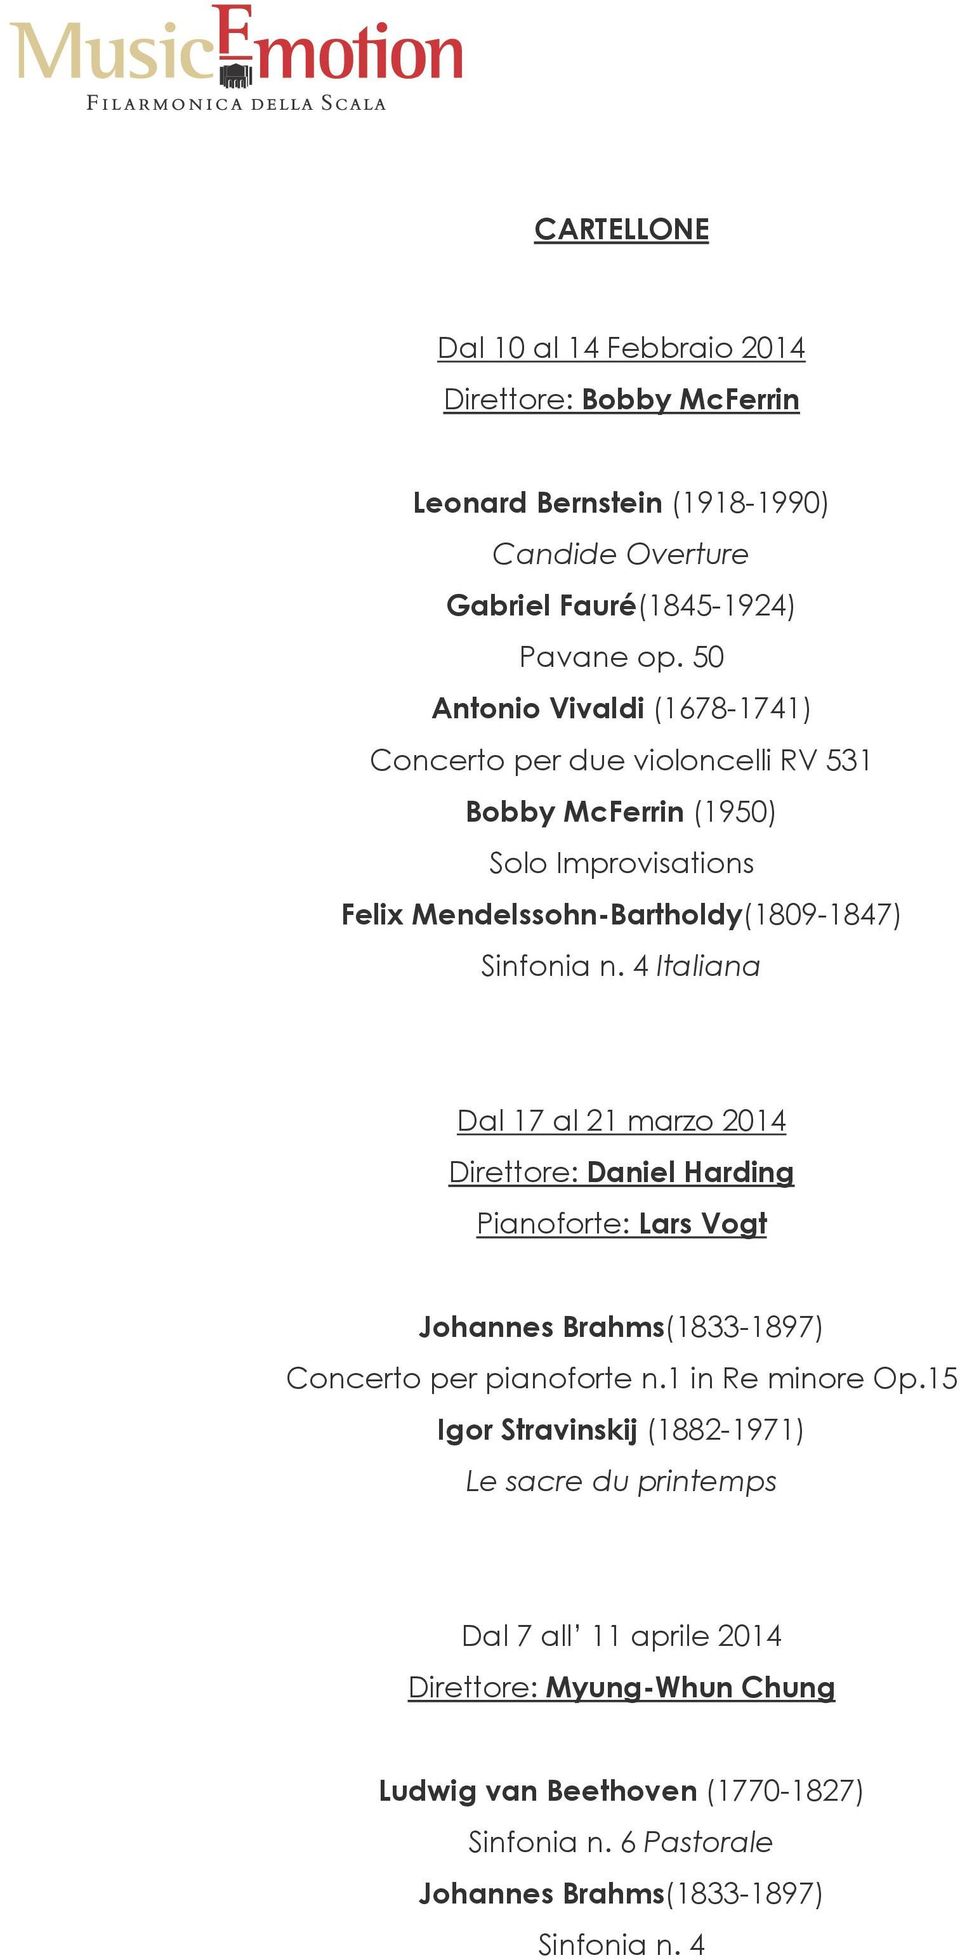 4 Italiana Dal 17 al 21 marzo 2014 Direttore: Daniel Harding Pianoforte: Lars Vogt Johannes Brahms(1833-1897) Concerto per pianoforte n.1 in Re minore Op.